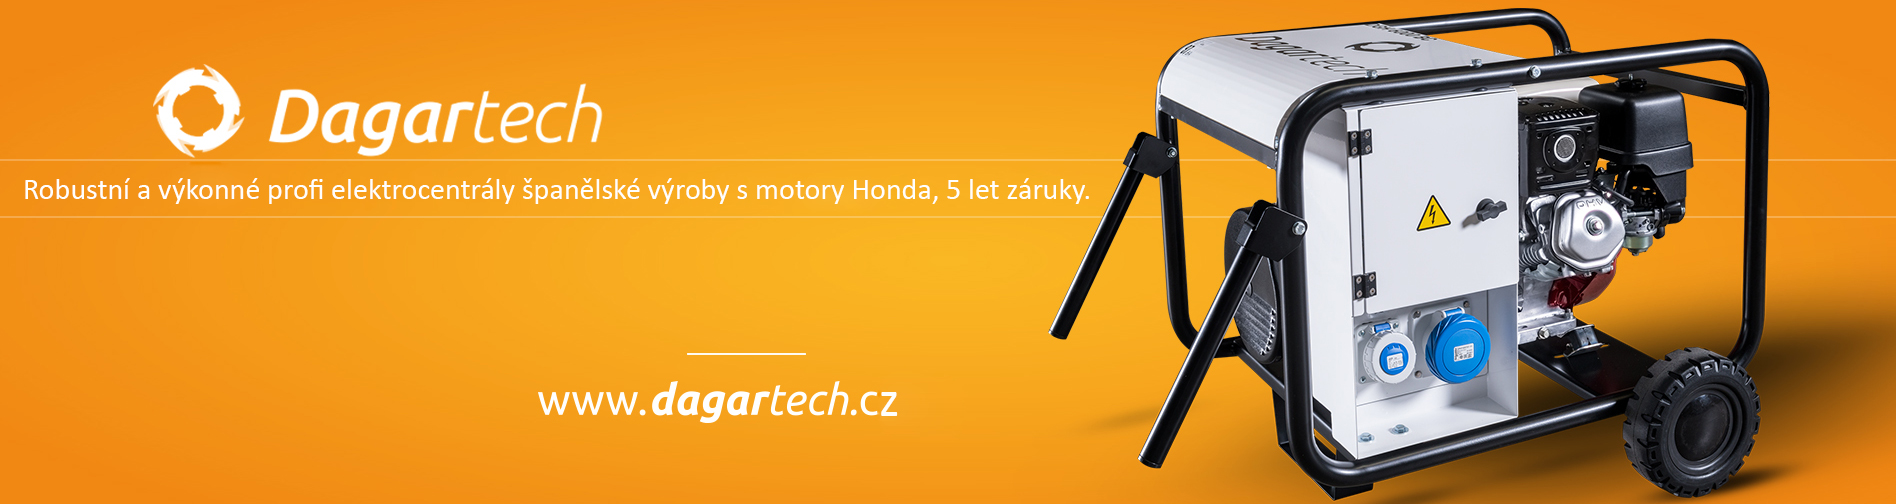 www.dagartech.cz - Profesionální elektrocentrály s motorem Honda